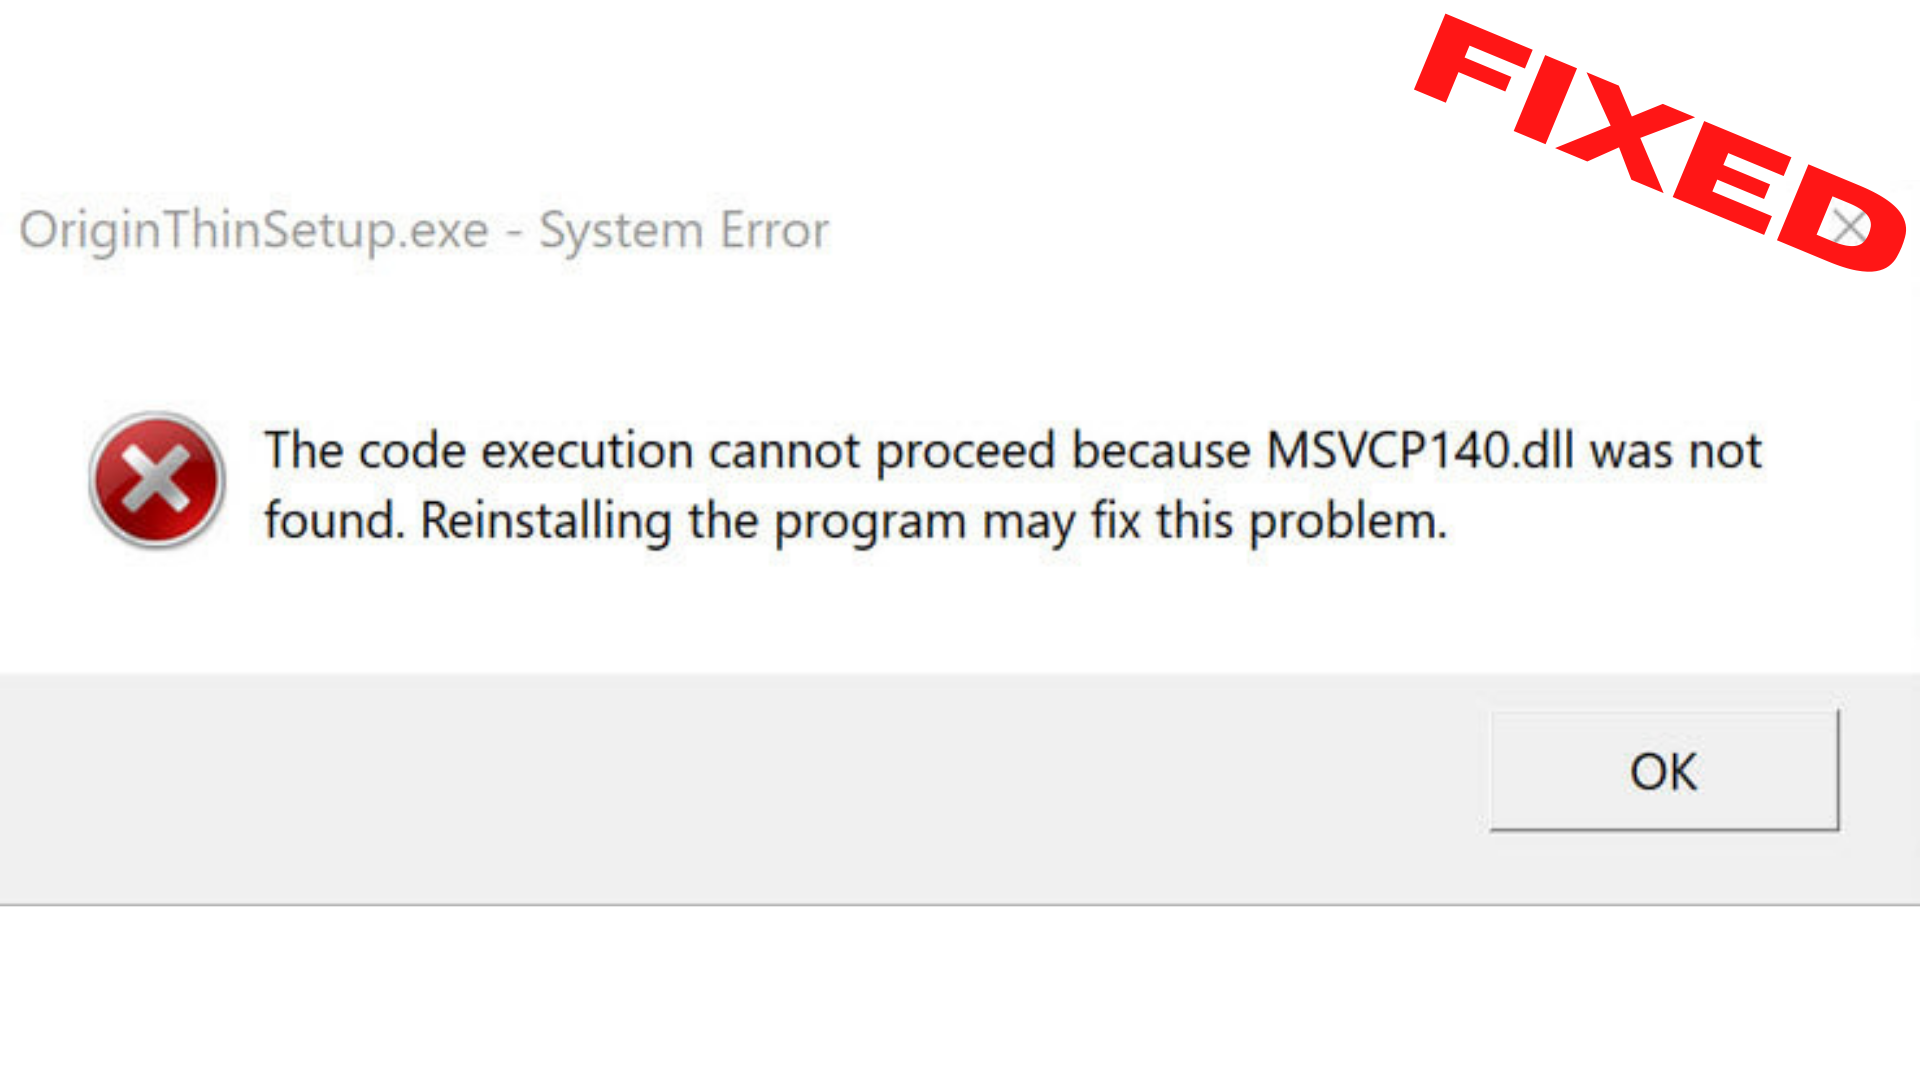 не удалось продолжить выполнение кода поскольку система не обнаружила msvcp140 dll гта 5 фото 6